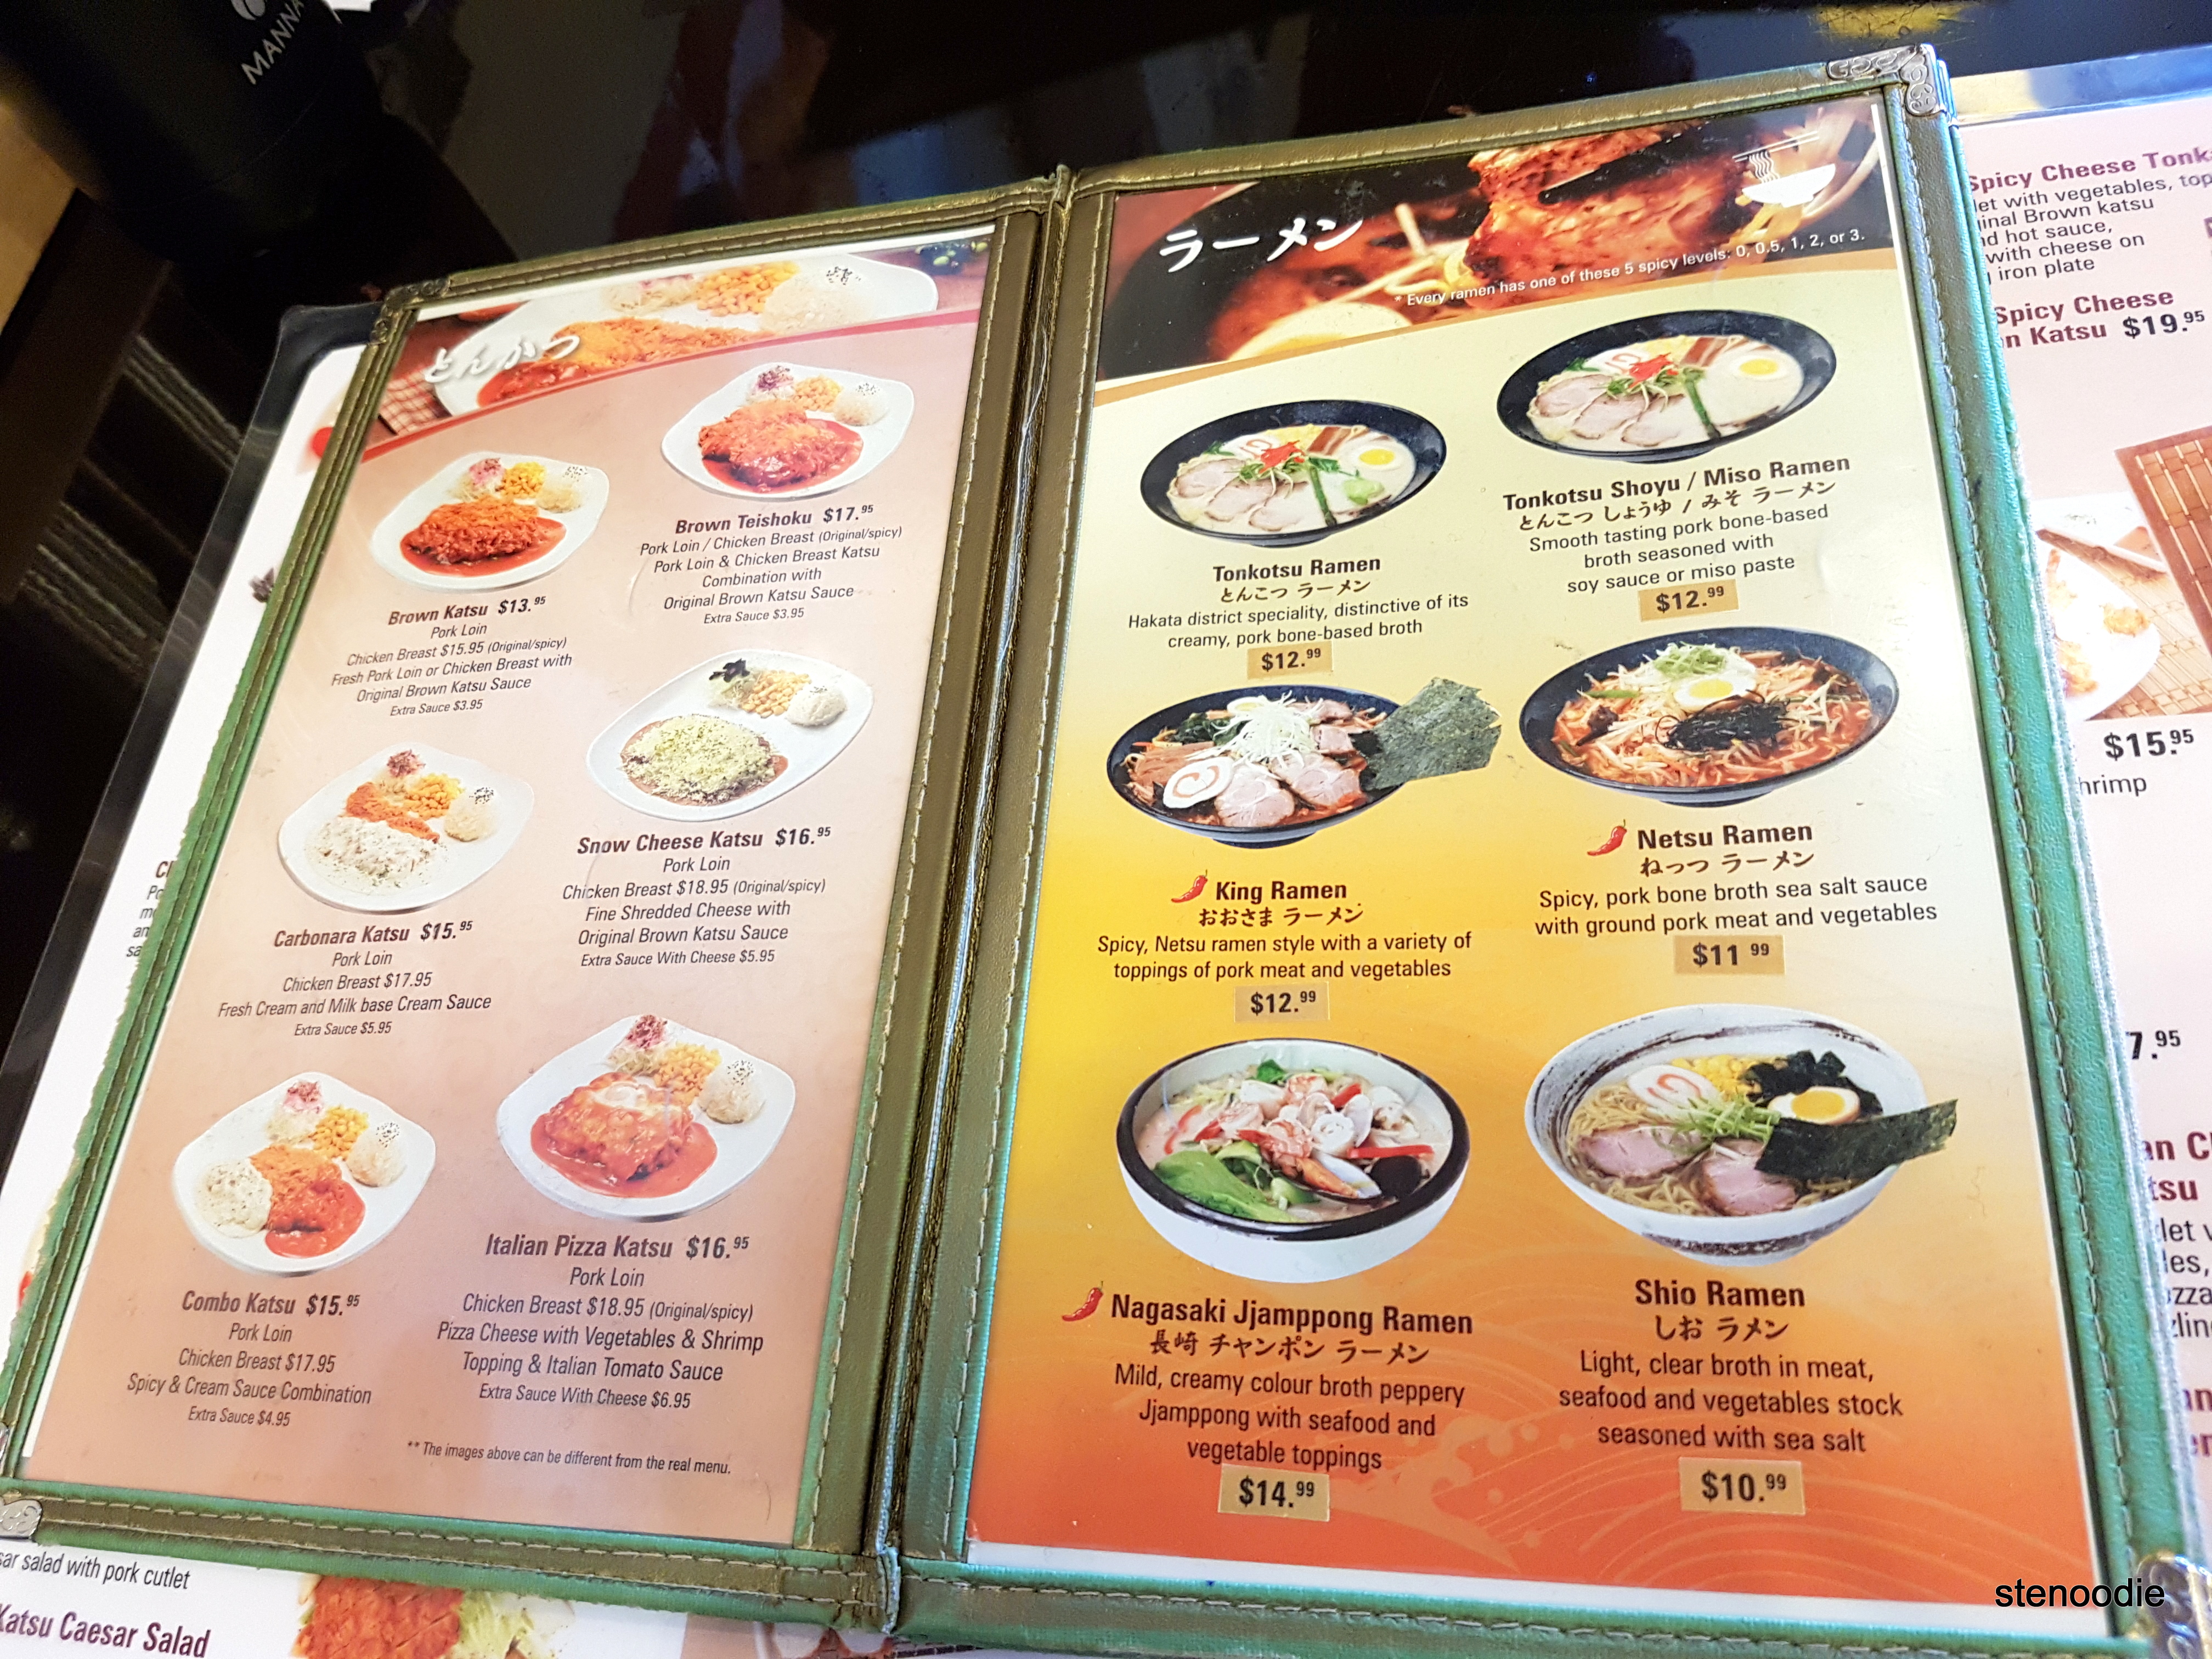  Sonoya and Brown Katsu menu and prices